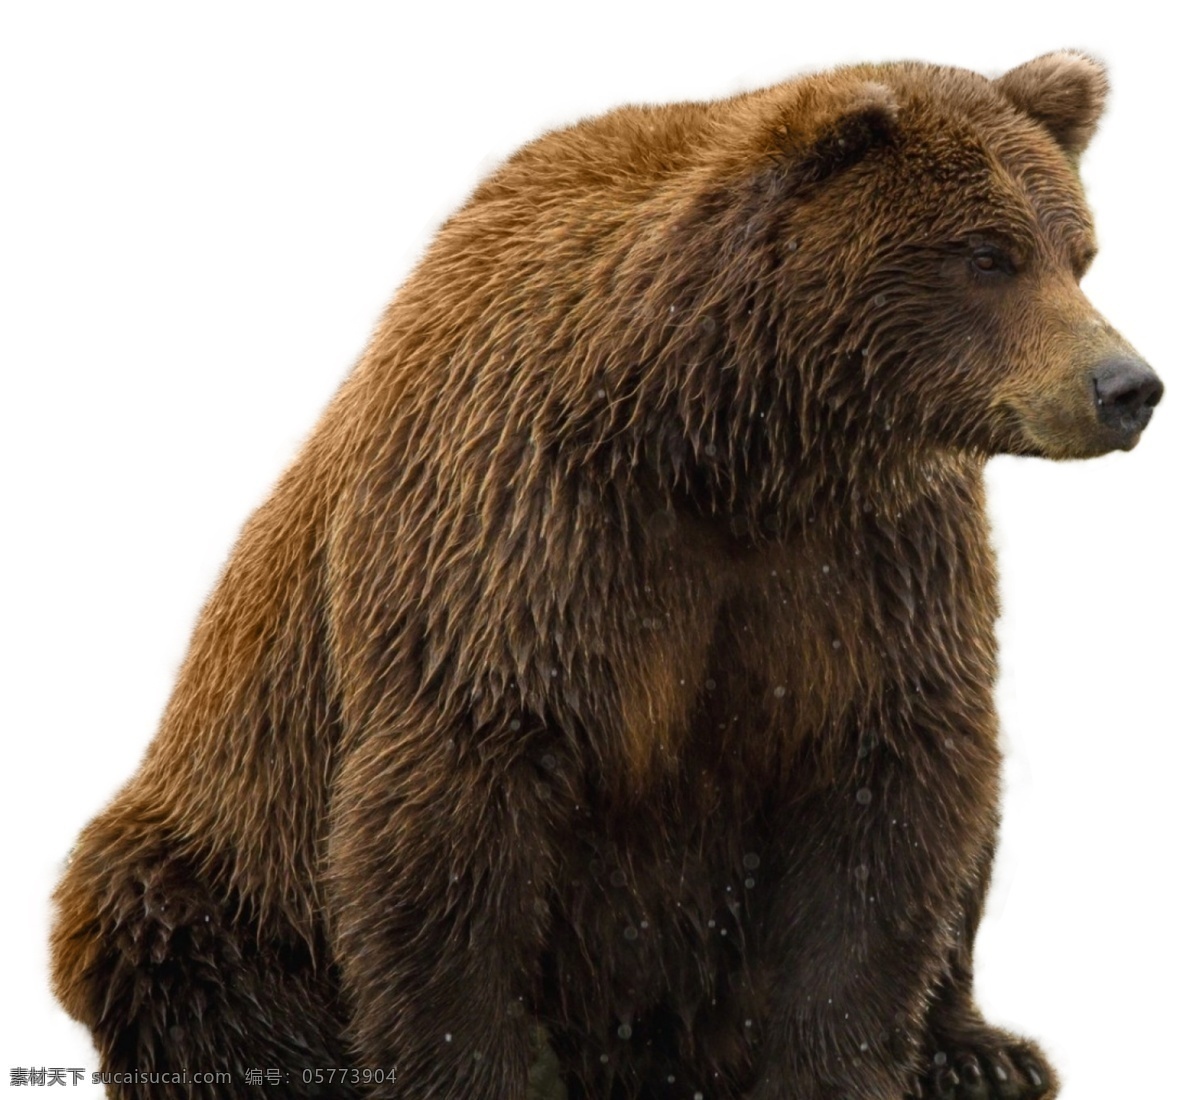 熊图片 熊 元素免扣 贪吃熊 平面设计 动物 野生 动物园 野生动物 哺乳动物 生物世界